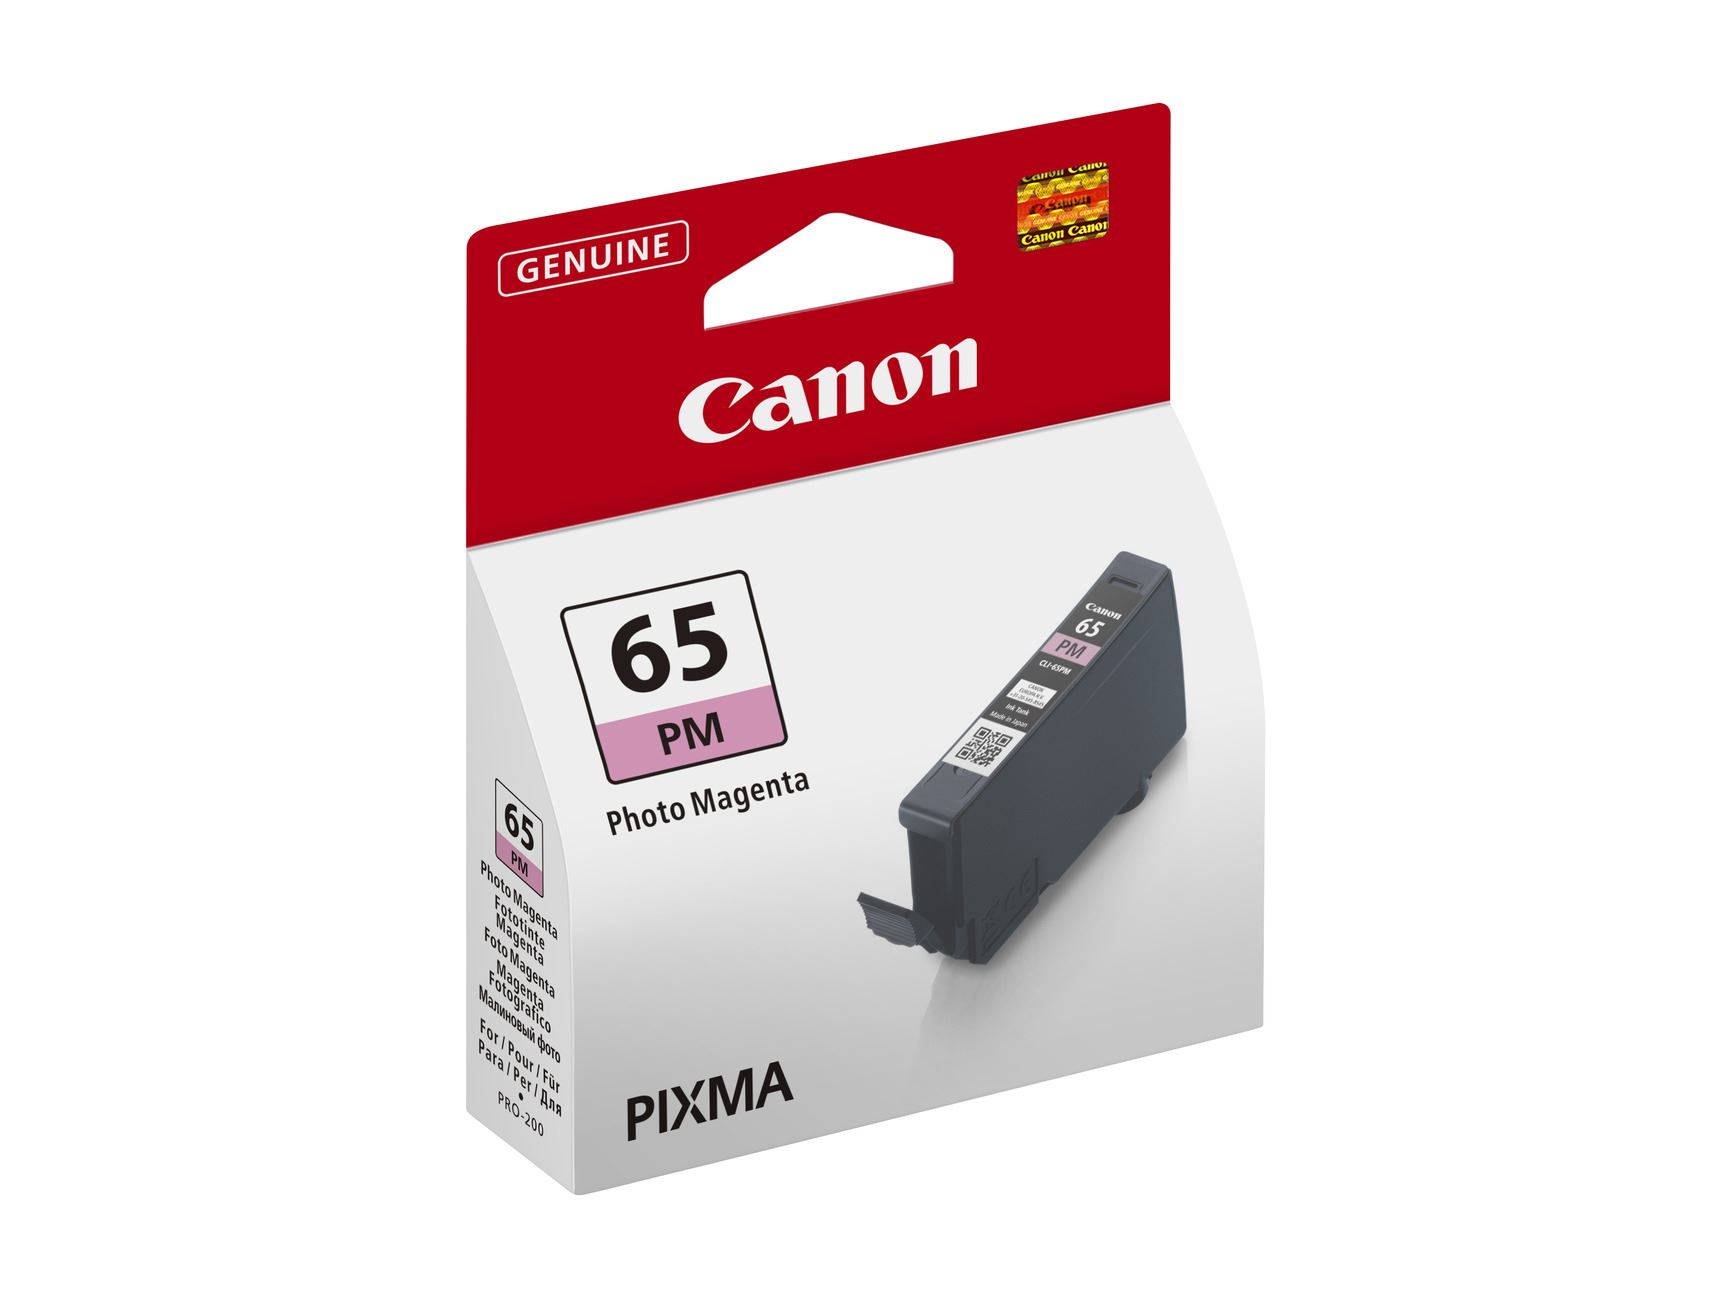 Canon BJ CARTRIDGE CLI-65 PM EUR/OCN0 